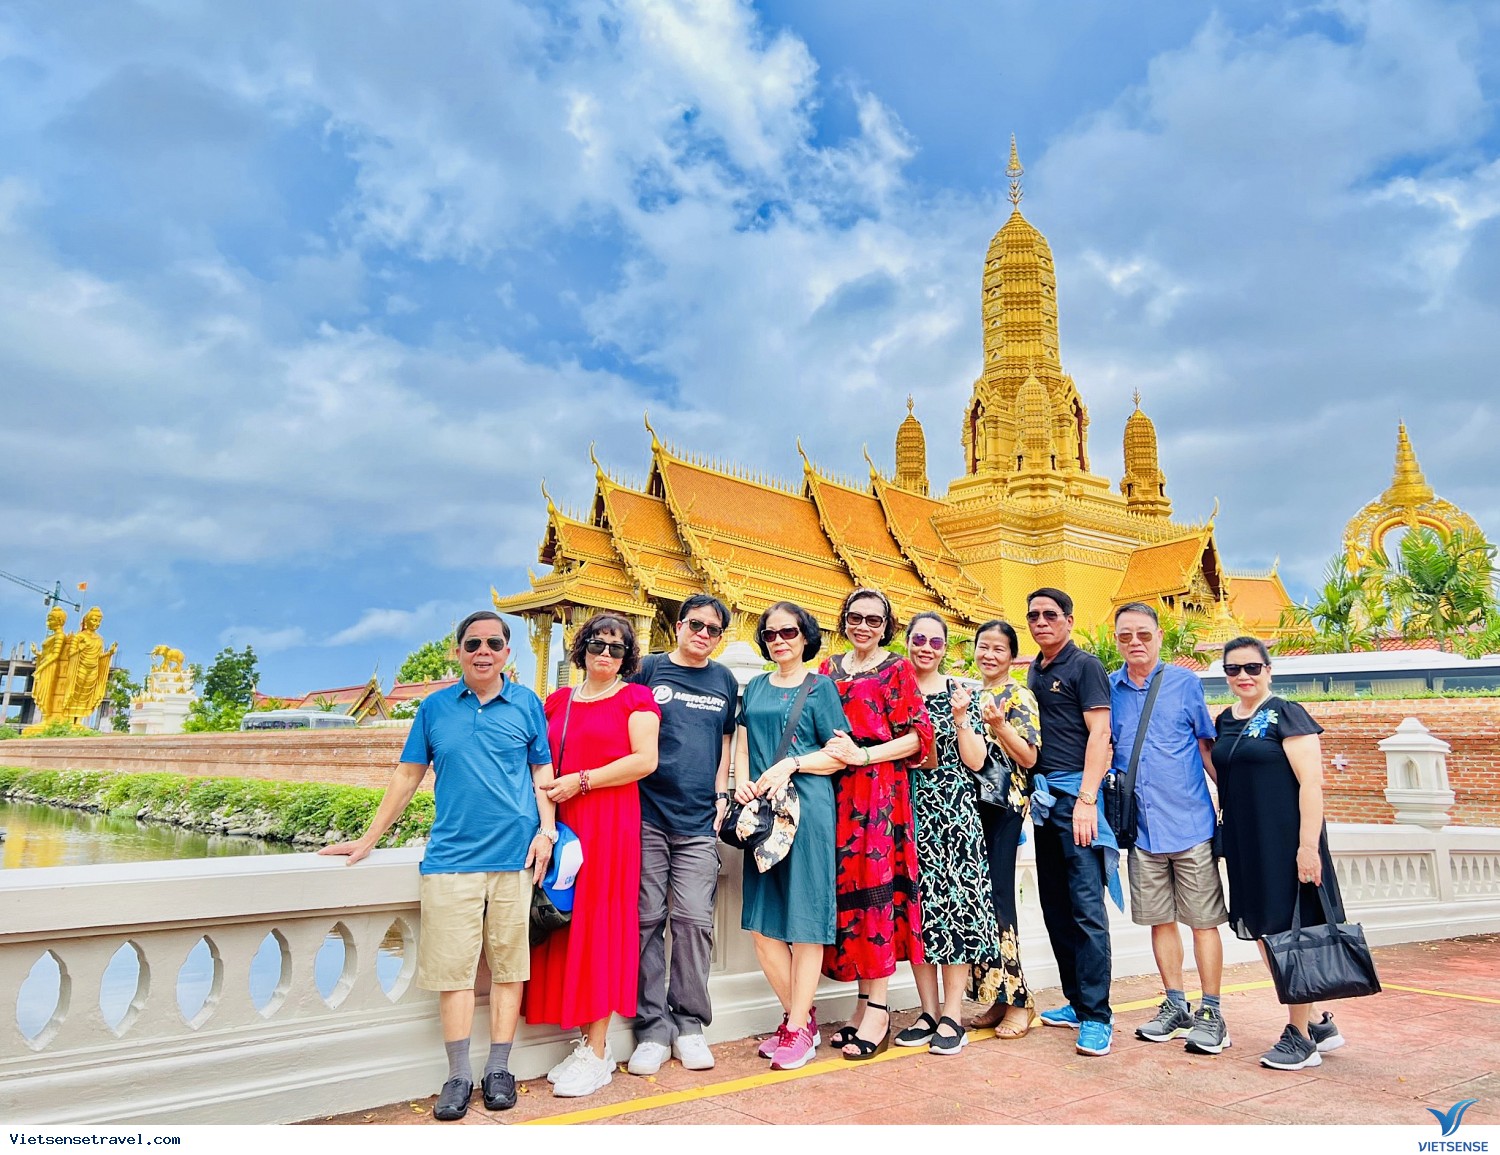 Hãy đến Thái Lan để khám phá vẻ đẹp đất nước này với con người thân thiện, ẩm thực đậm chất Đông Nam Á và khung cảnh thiên nhiên tuyệt đẹp. Bạn sẽ có những kỷ niệm không thể nào quên khi trải nghiệm du lịch tại đây.